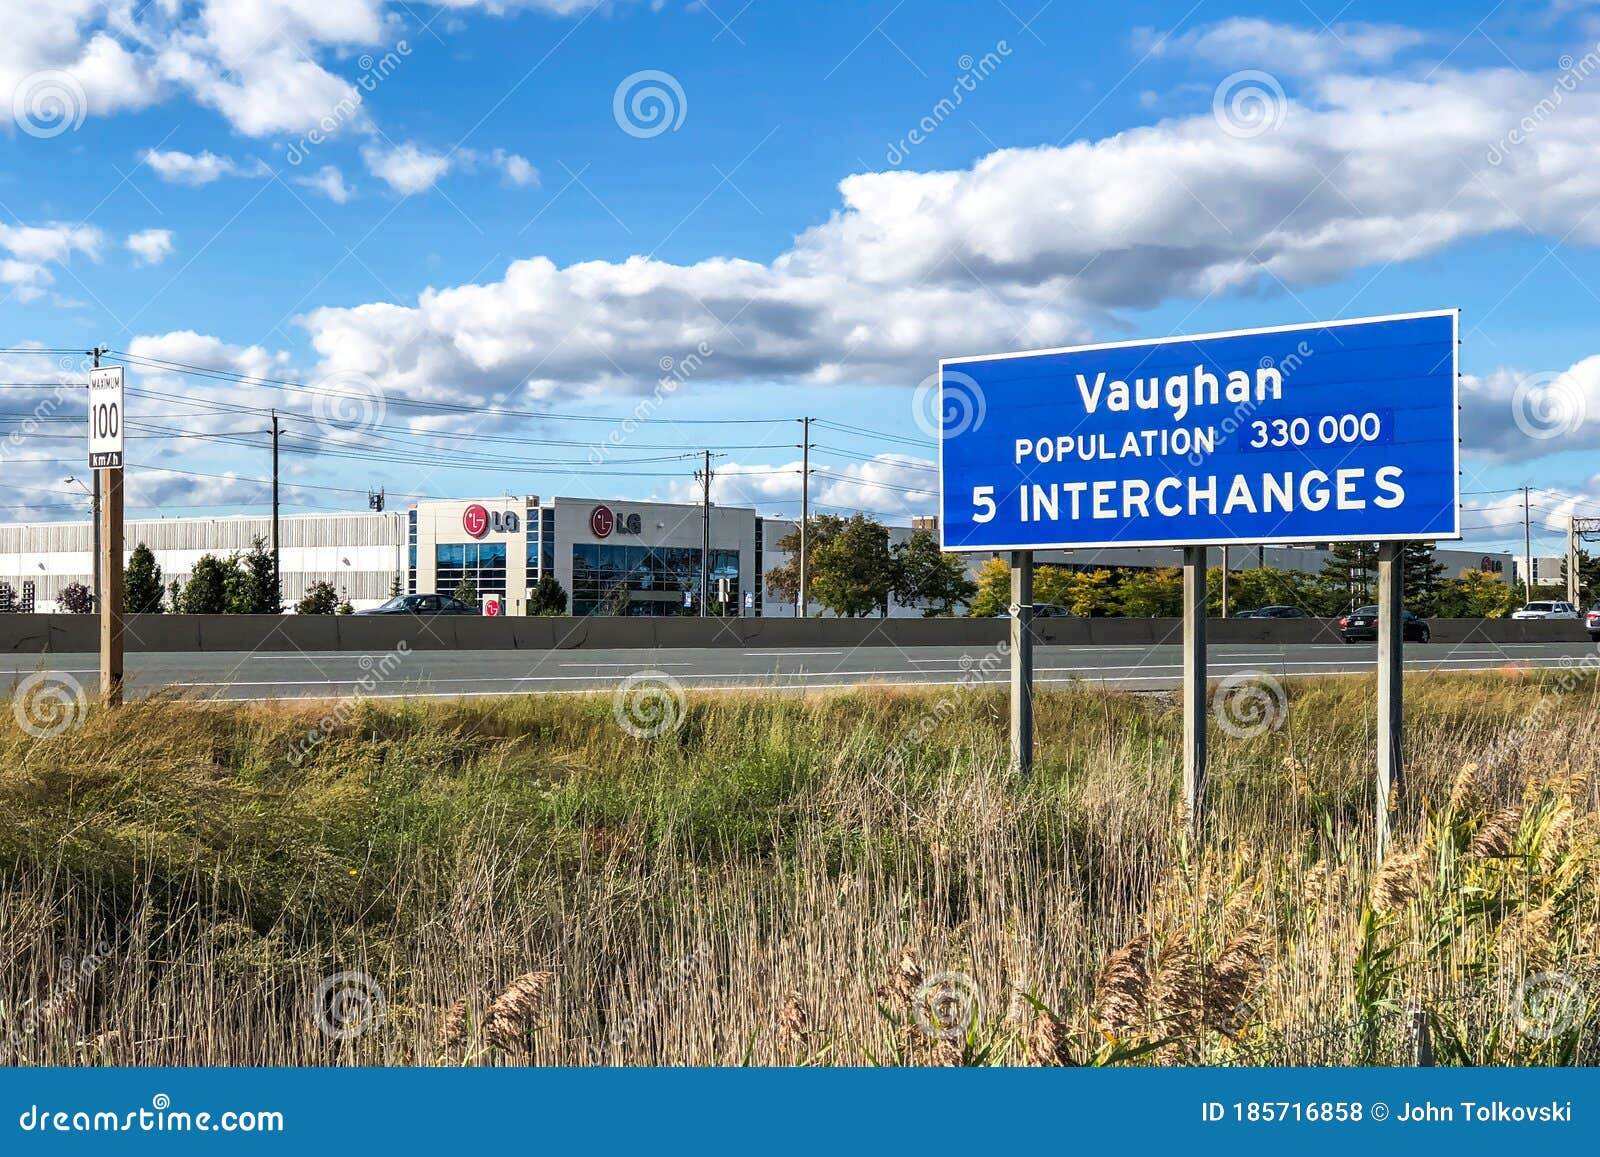 Vaughan Ontario To Toronto